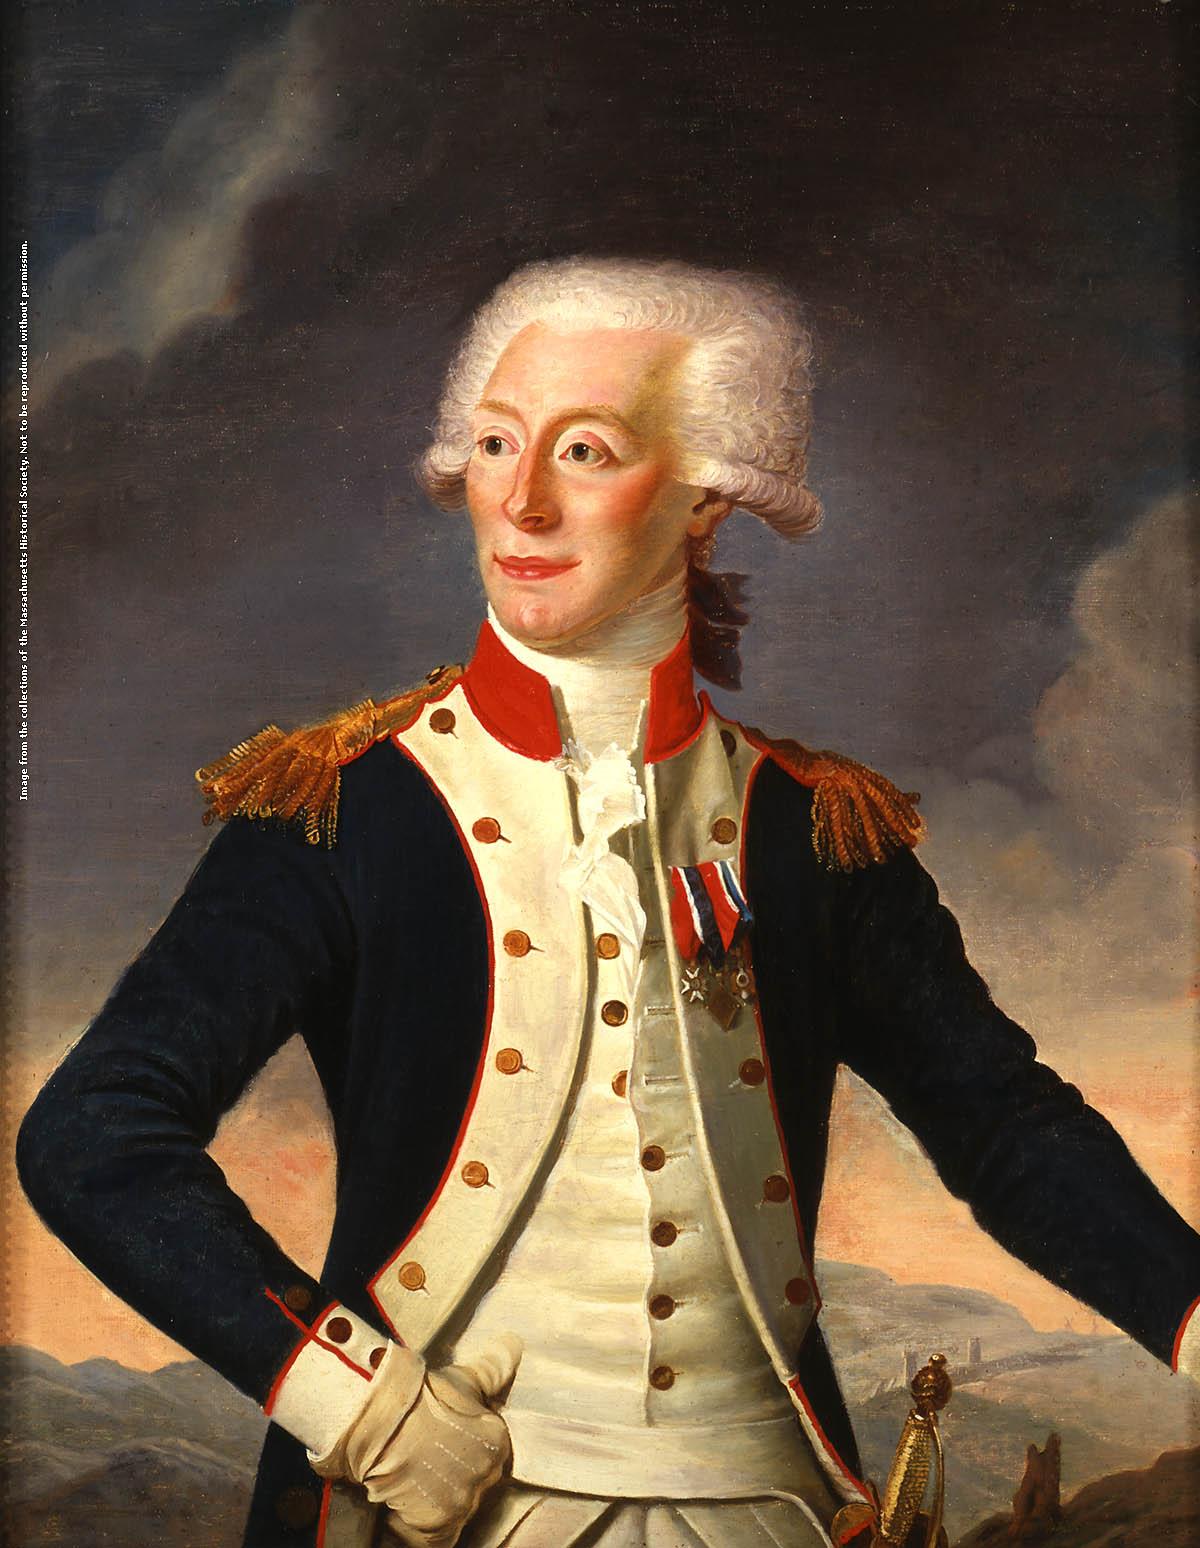 MHS Collections Online: Gilbert du Motier, marquis de Lafayette